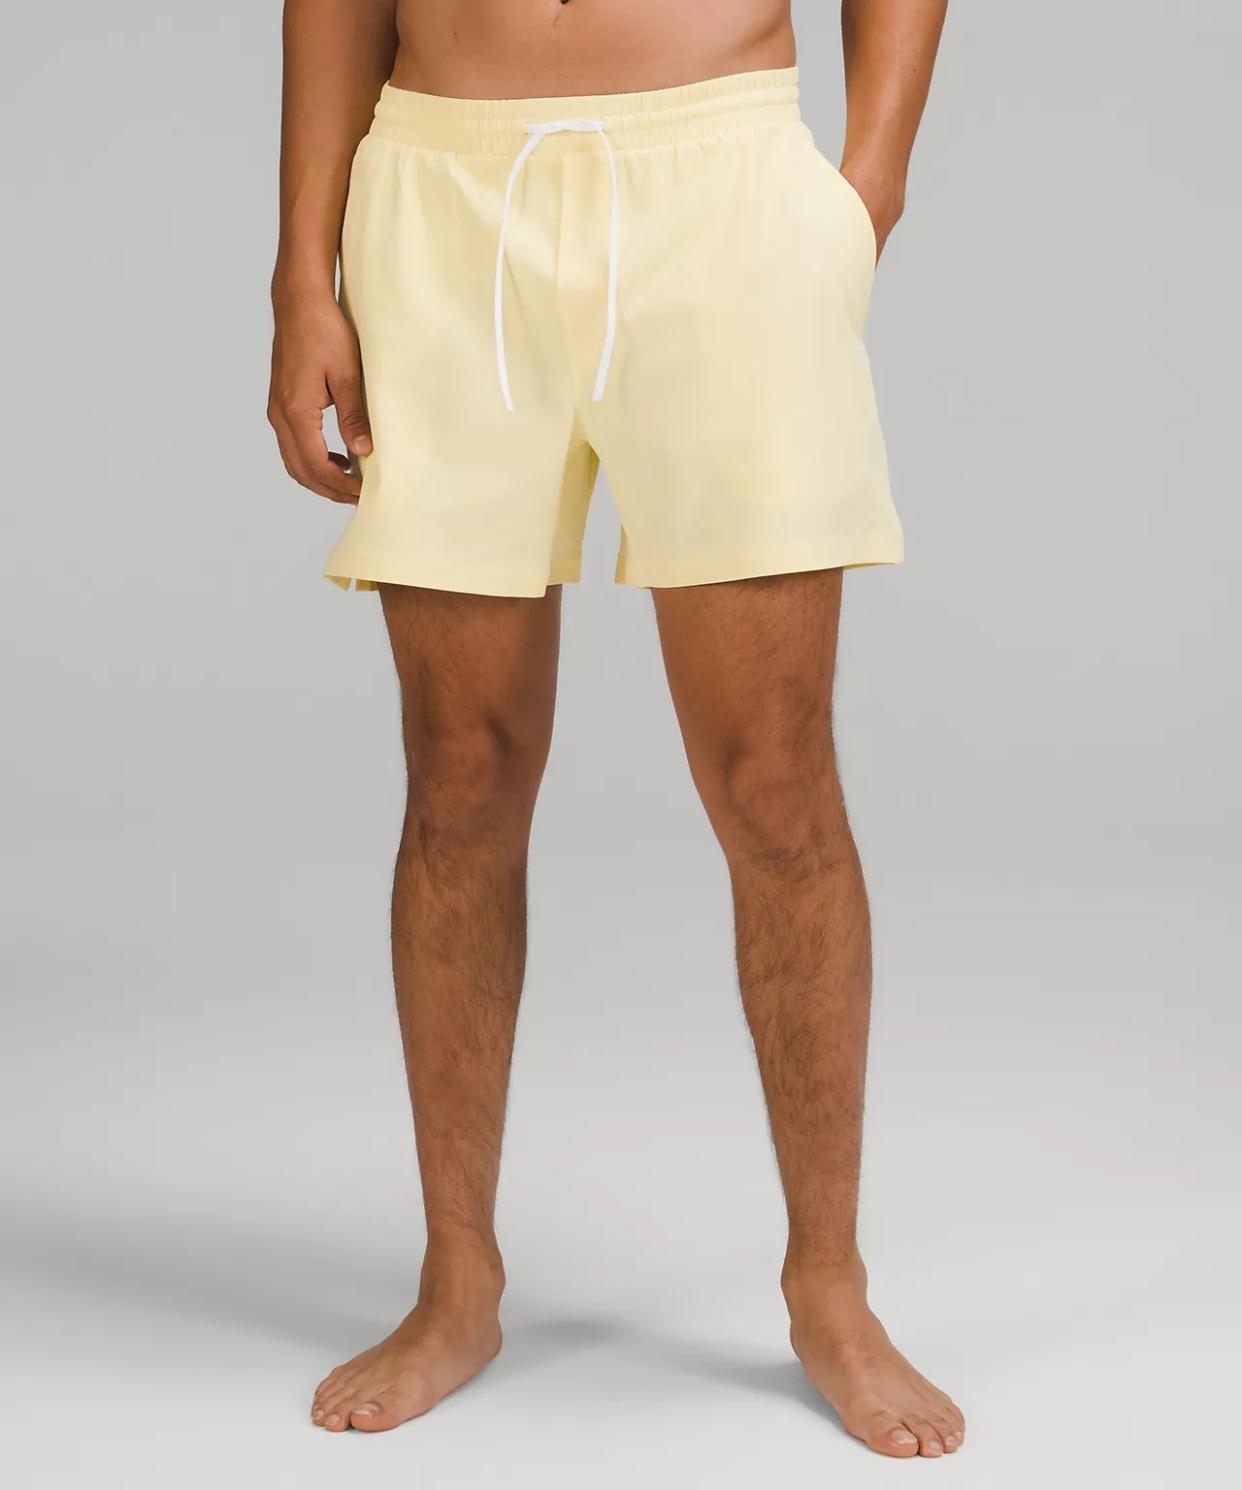 lululemon shorts review